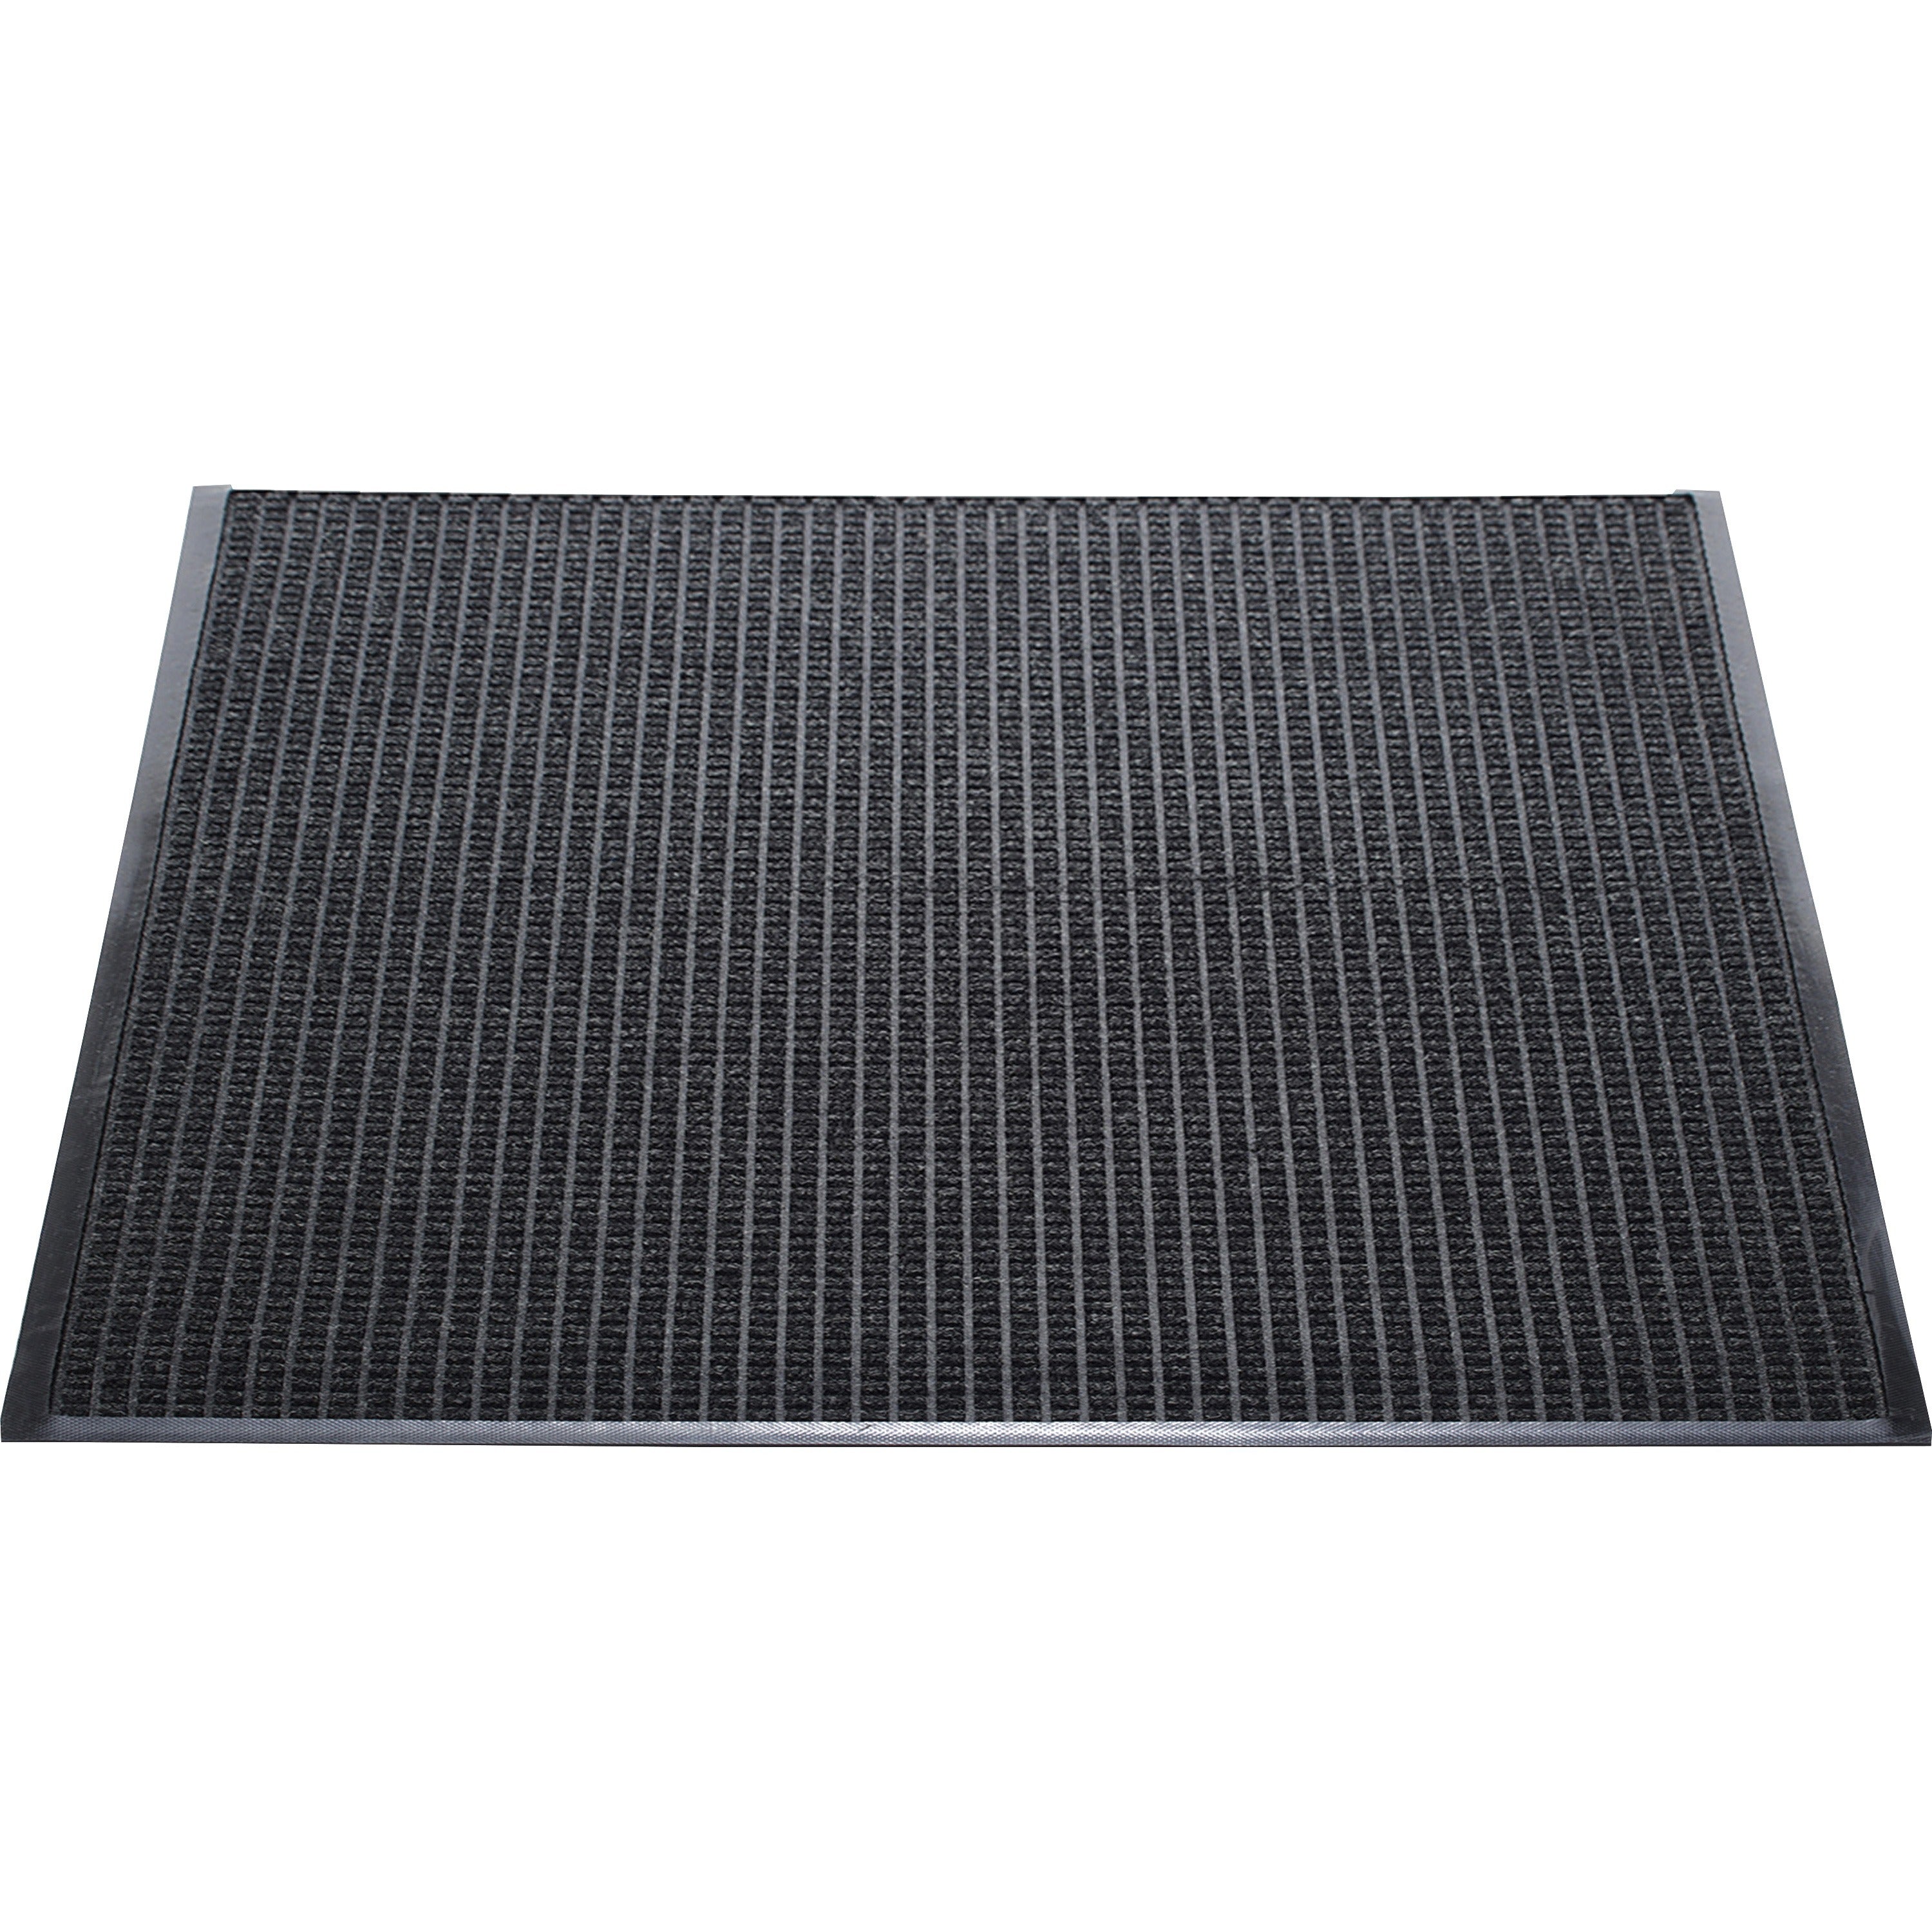 Genuine Joe WaterGuard Indoor/Outdoor Mats - Carpeted Floor, Hard Floor, Indoor, Outdoor - 60" Length x 36" Width - Rubber, Polypropylene - Charcoal Gray - 1Each - 